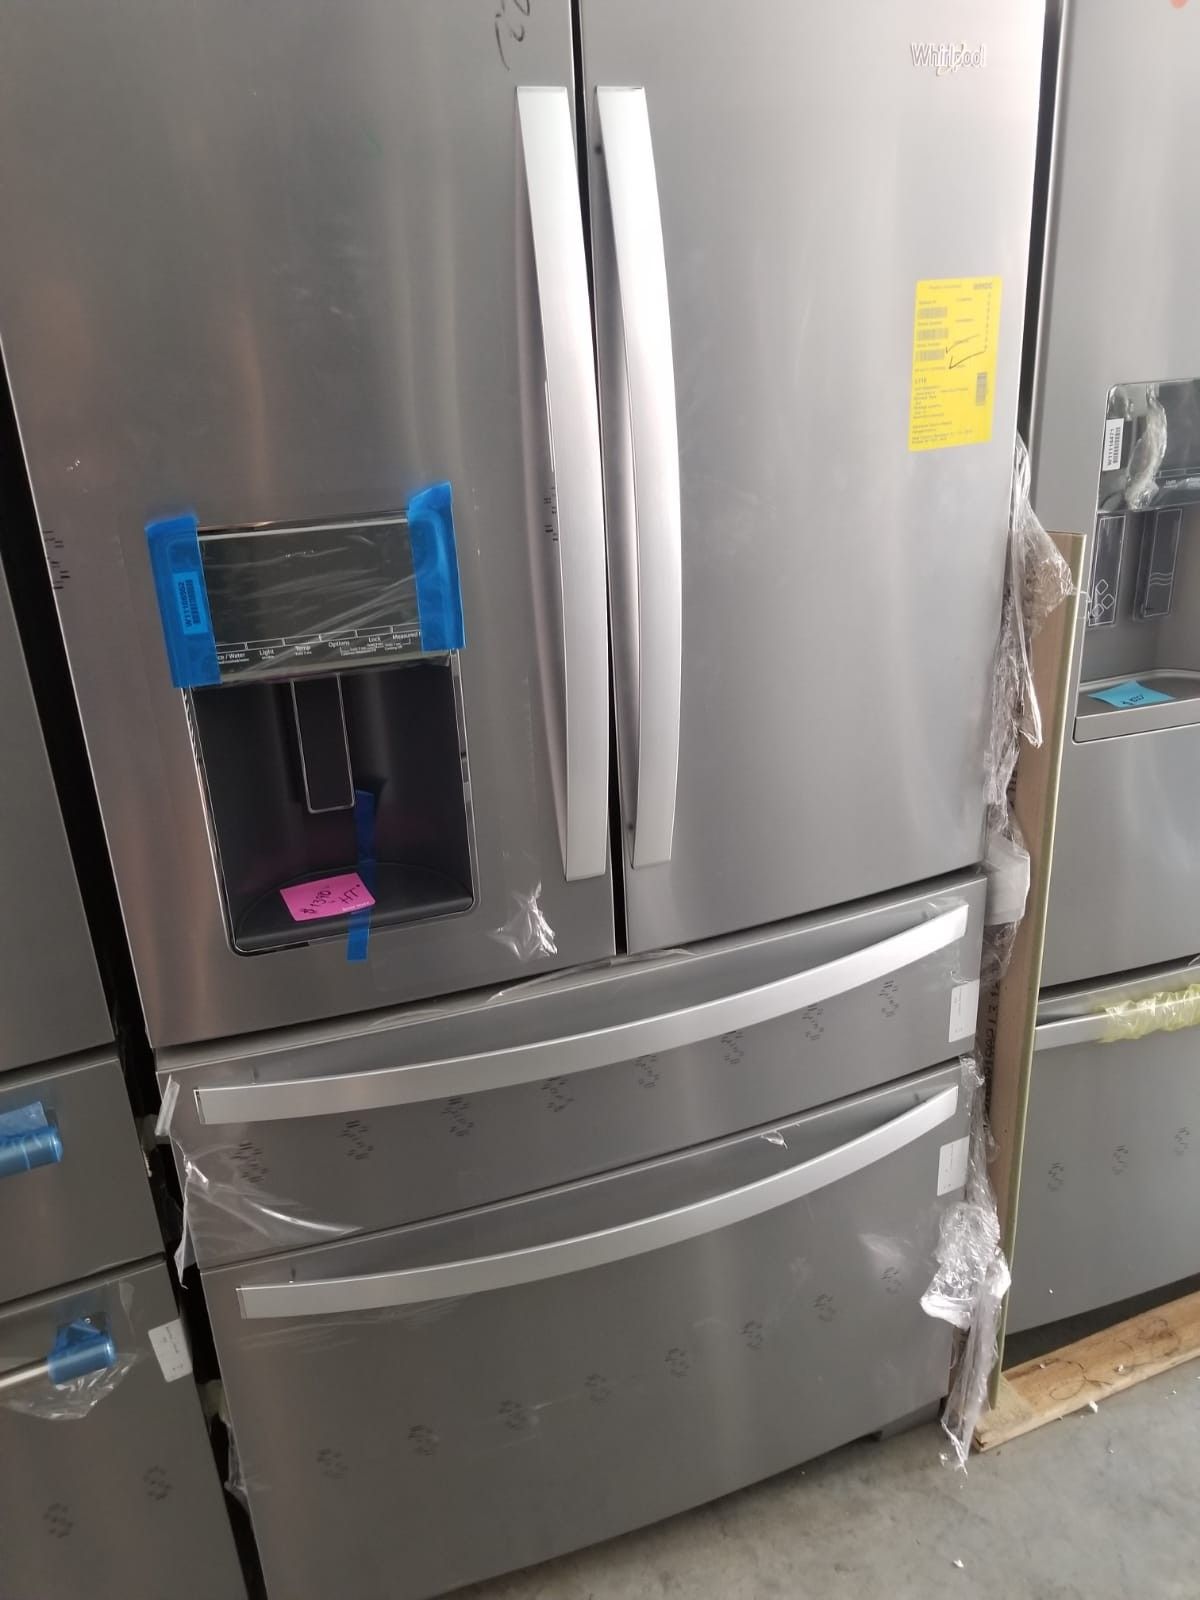 Refrigerator Whirlpool Stainless Steel 36' 4 door. New. Warranty